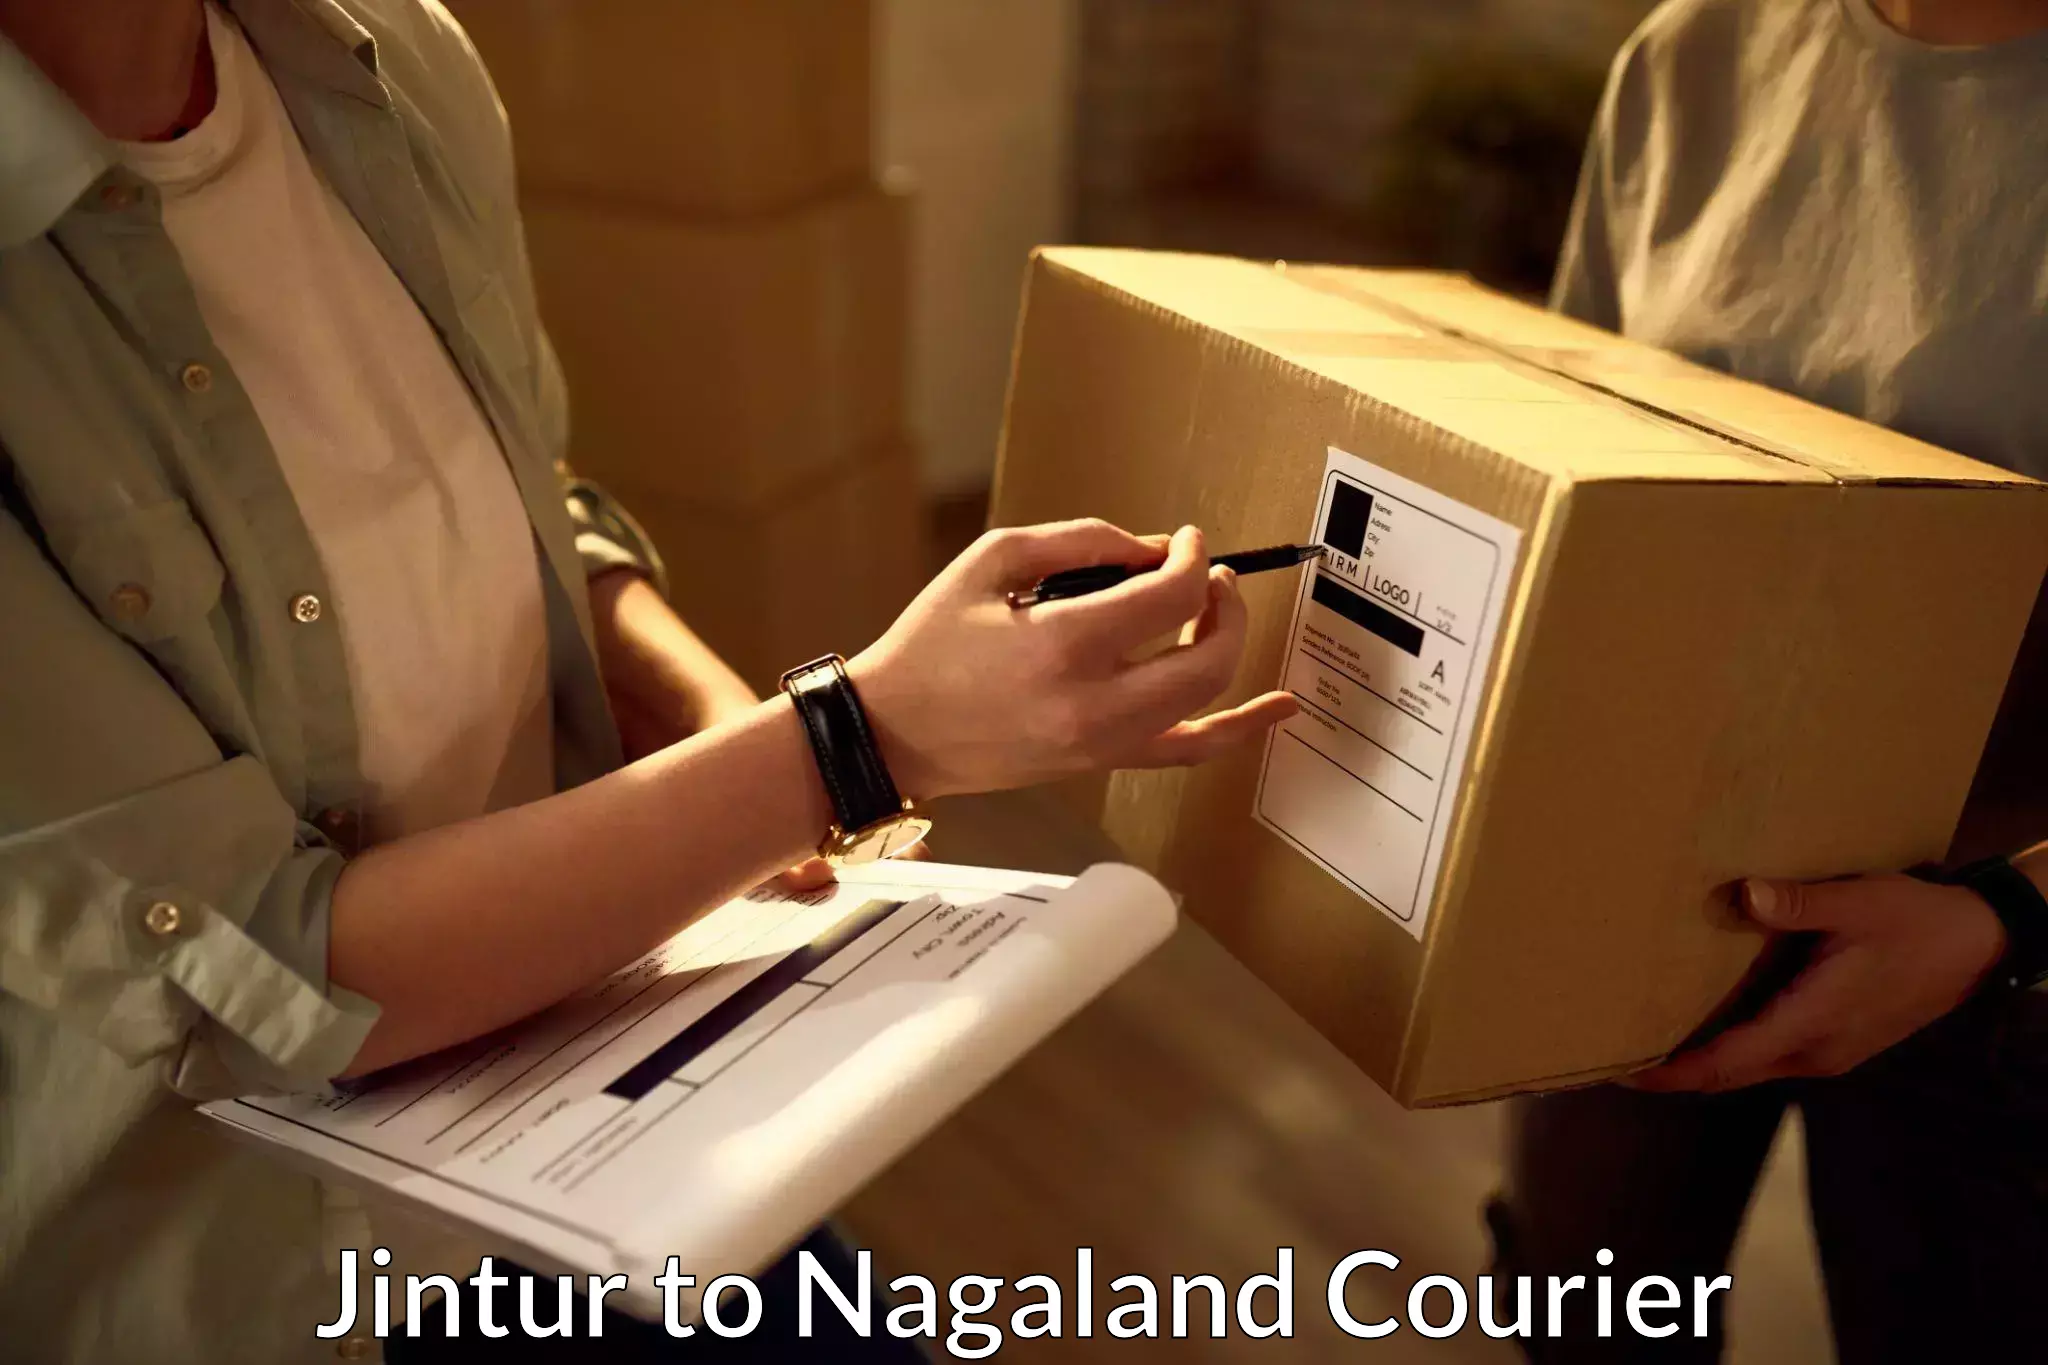 Affordable parcel service Jintur to Kiphire